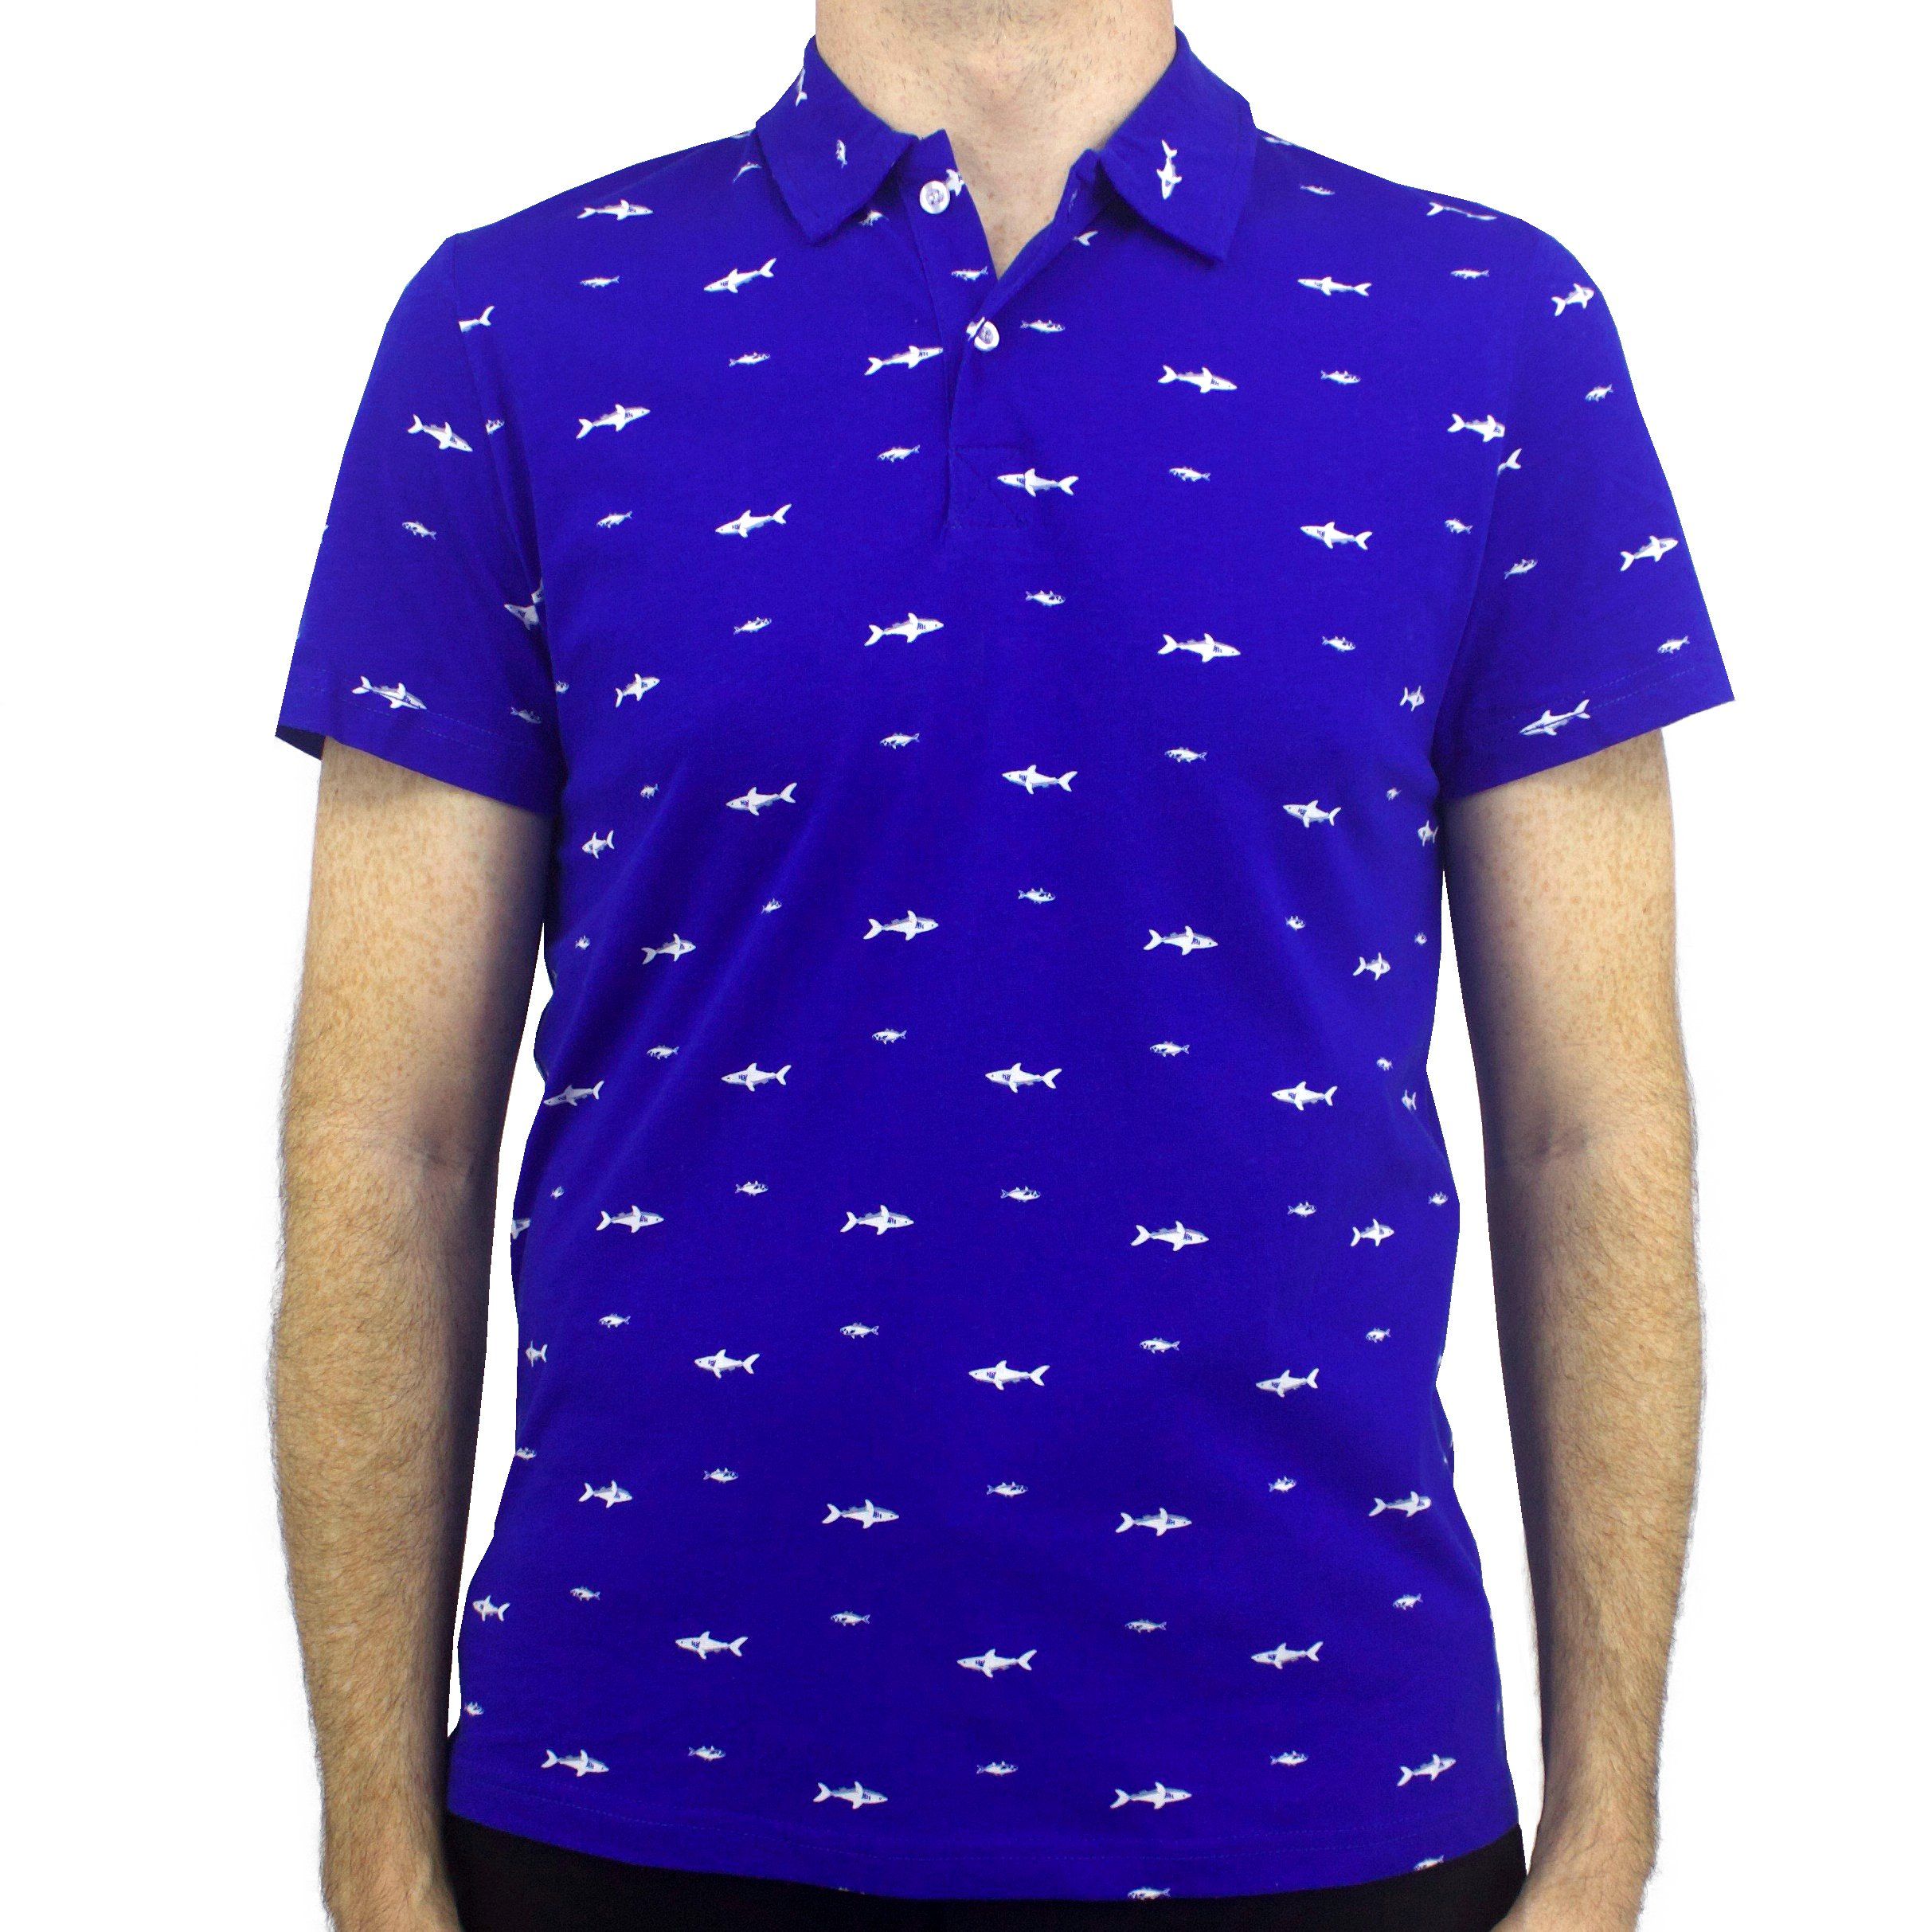 Rock Atoll Shark All Over Print Cobalt Blue Jersey Polo Tee T-Shirt Menswear.